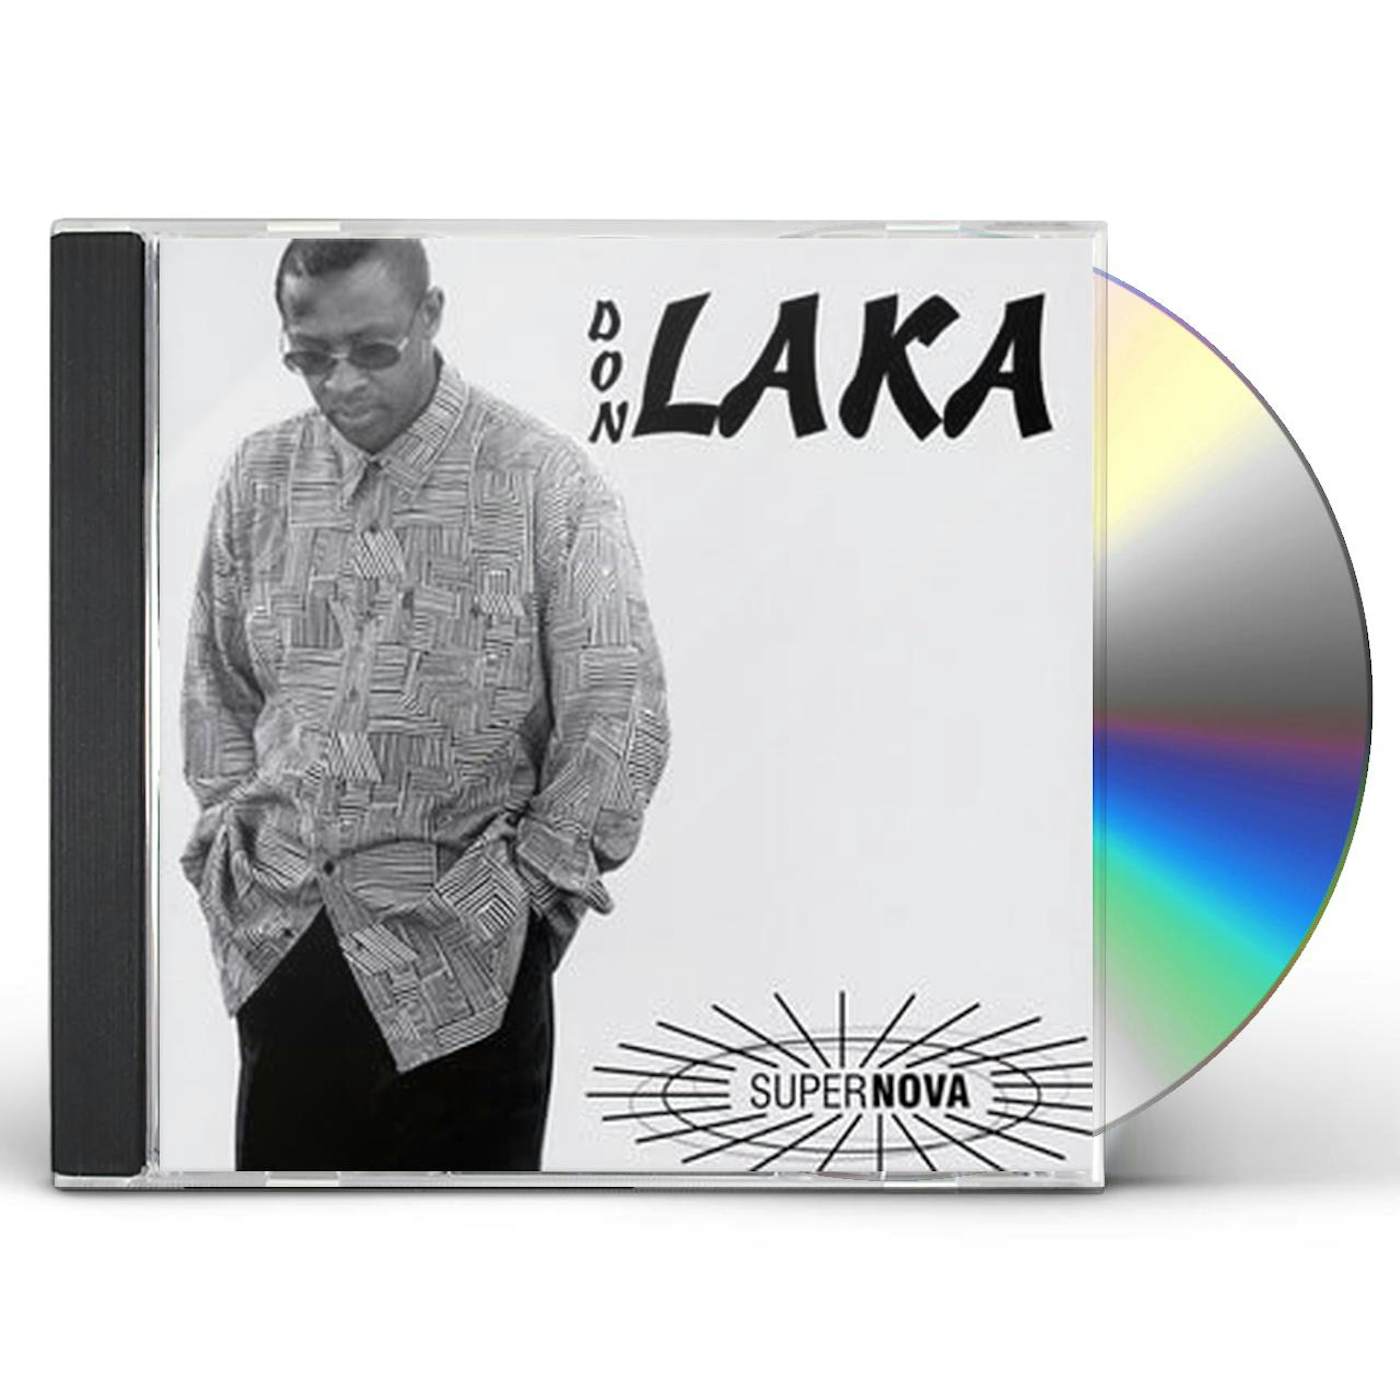 Don Laka SUPER NOVA CD